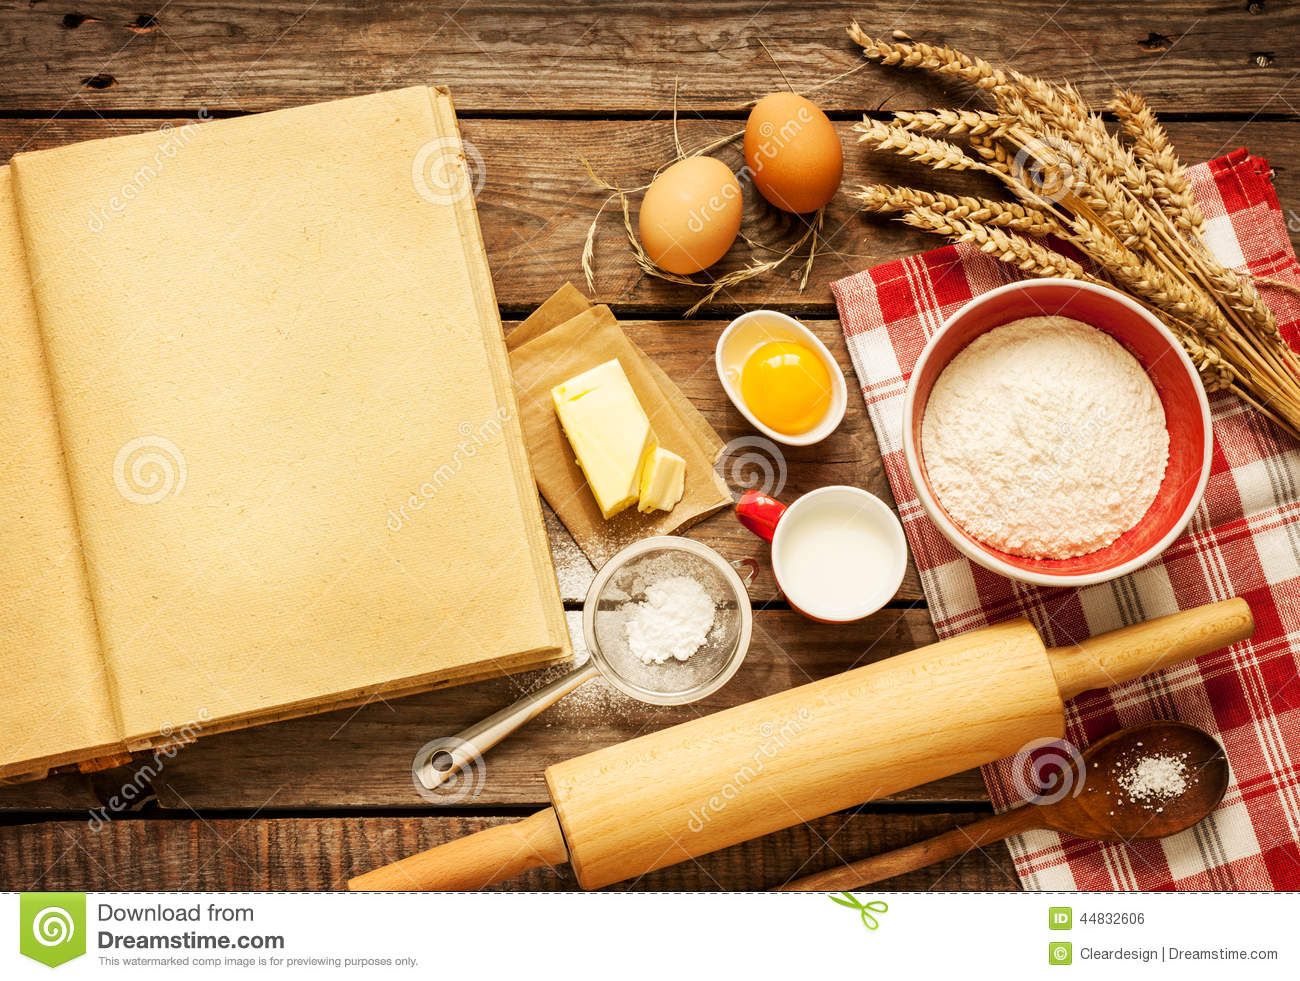 小麦粉の壁紙,麺棒,乳製品,静物,食物,スプーン